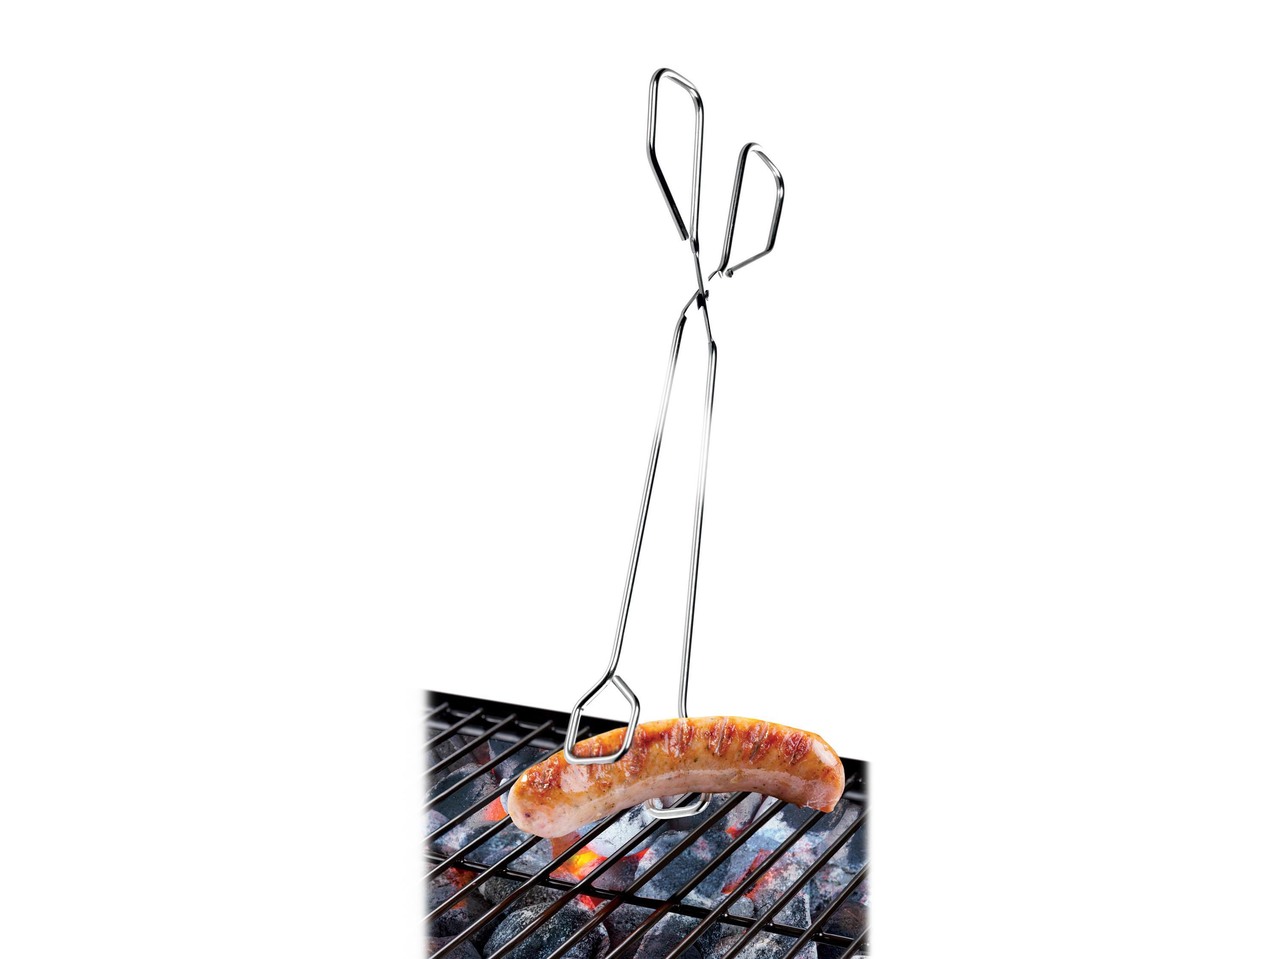 Barbecue Utensils